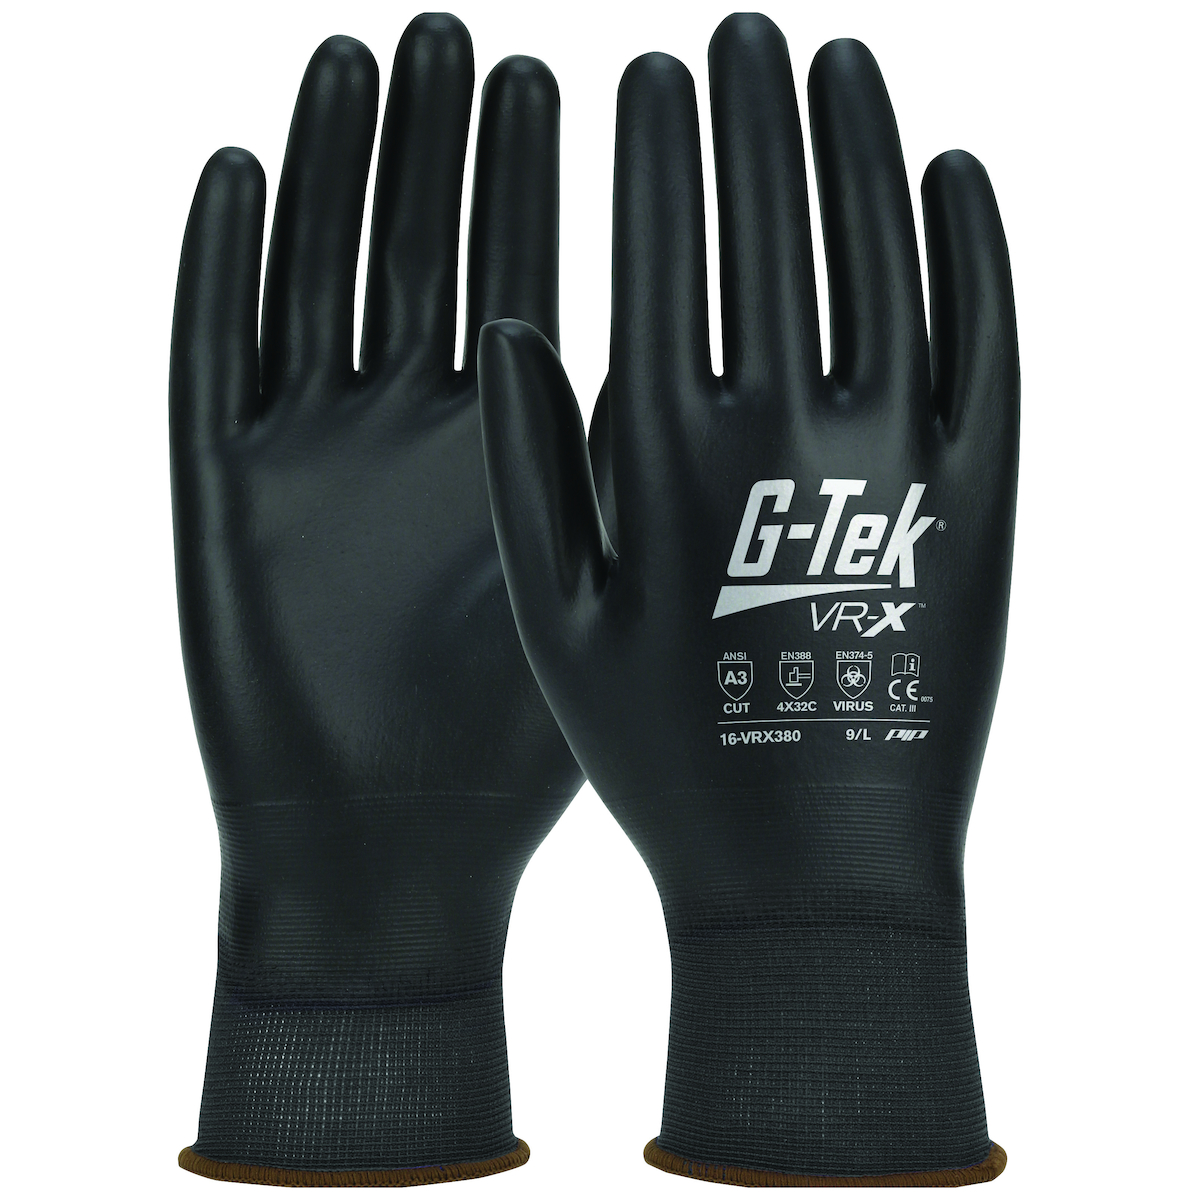 16-VRX380 PIP® G-Tek® VR-X™ PolyKor® A3 Work Gloves
